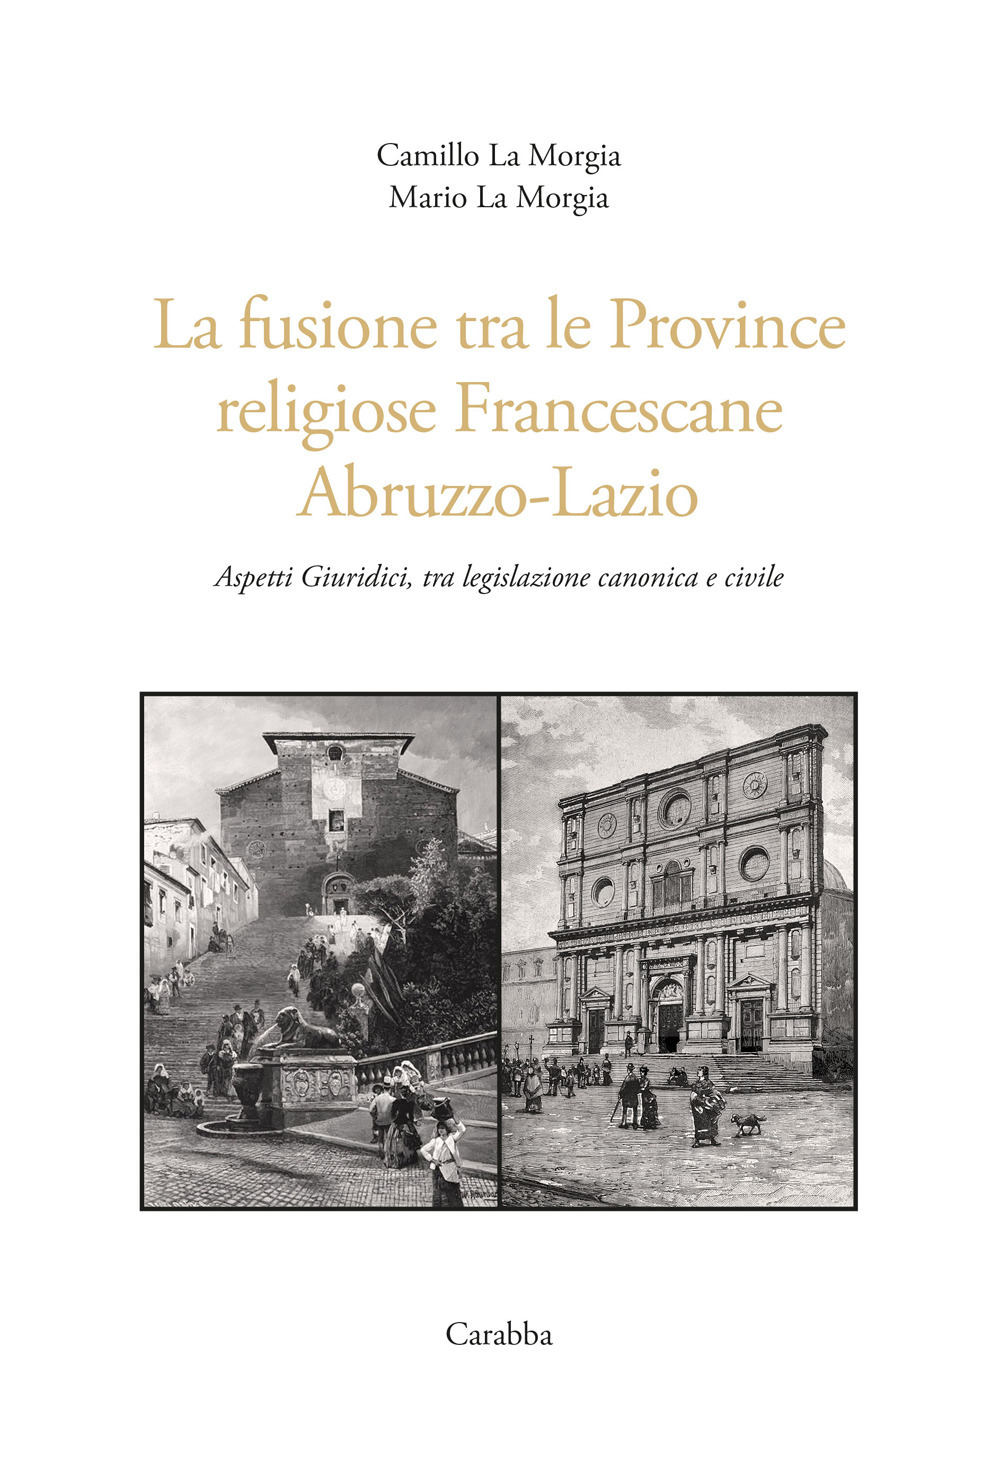 La fusione tra le province religiose francescane Abruzzo-Lazio. Aspetti giuridici, tra legislazione canonica e civile